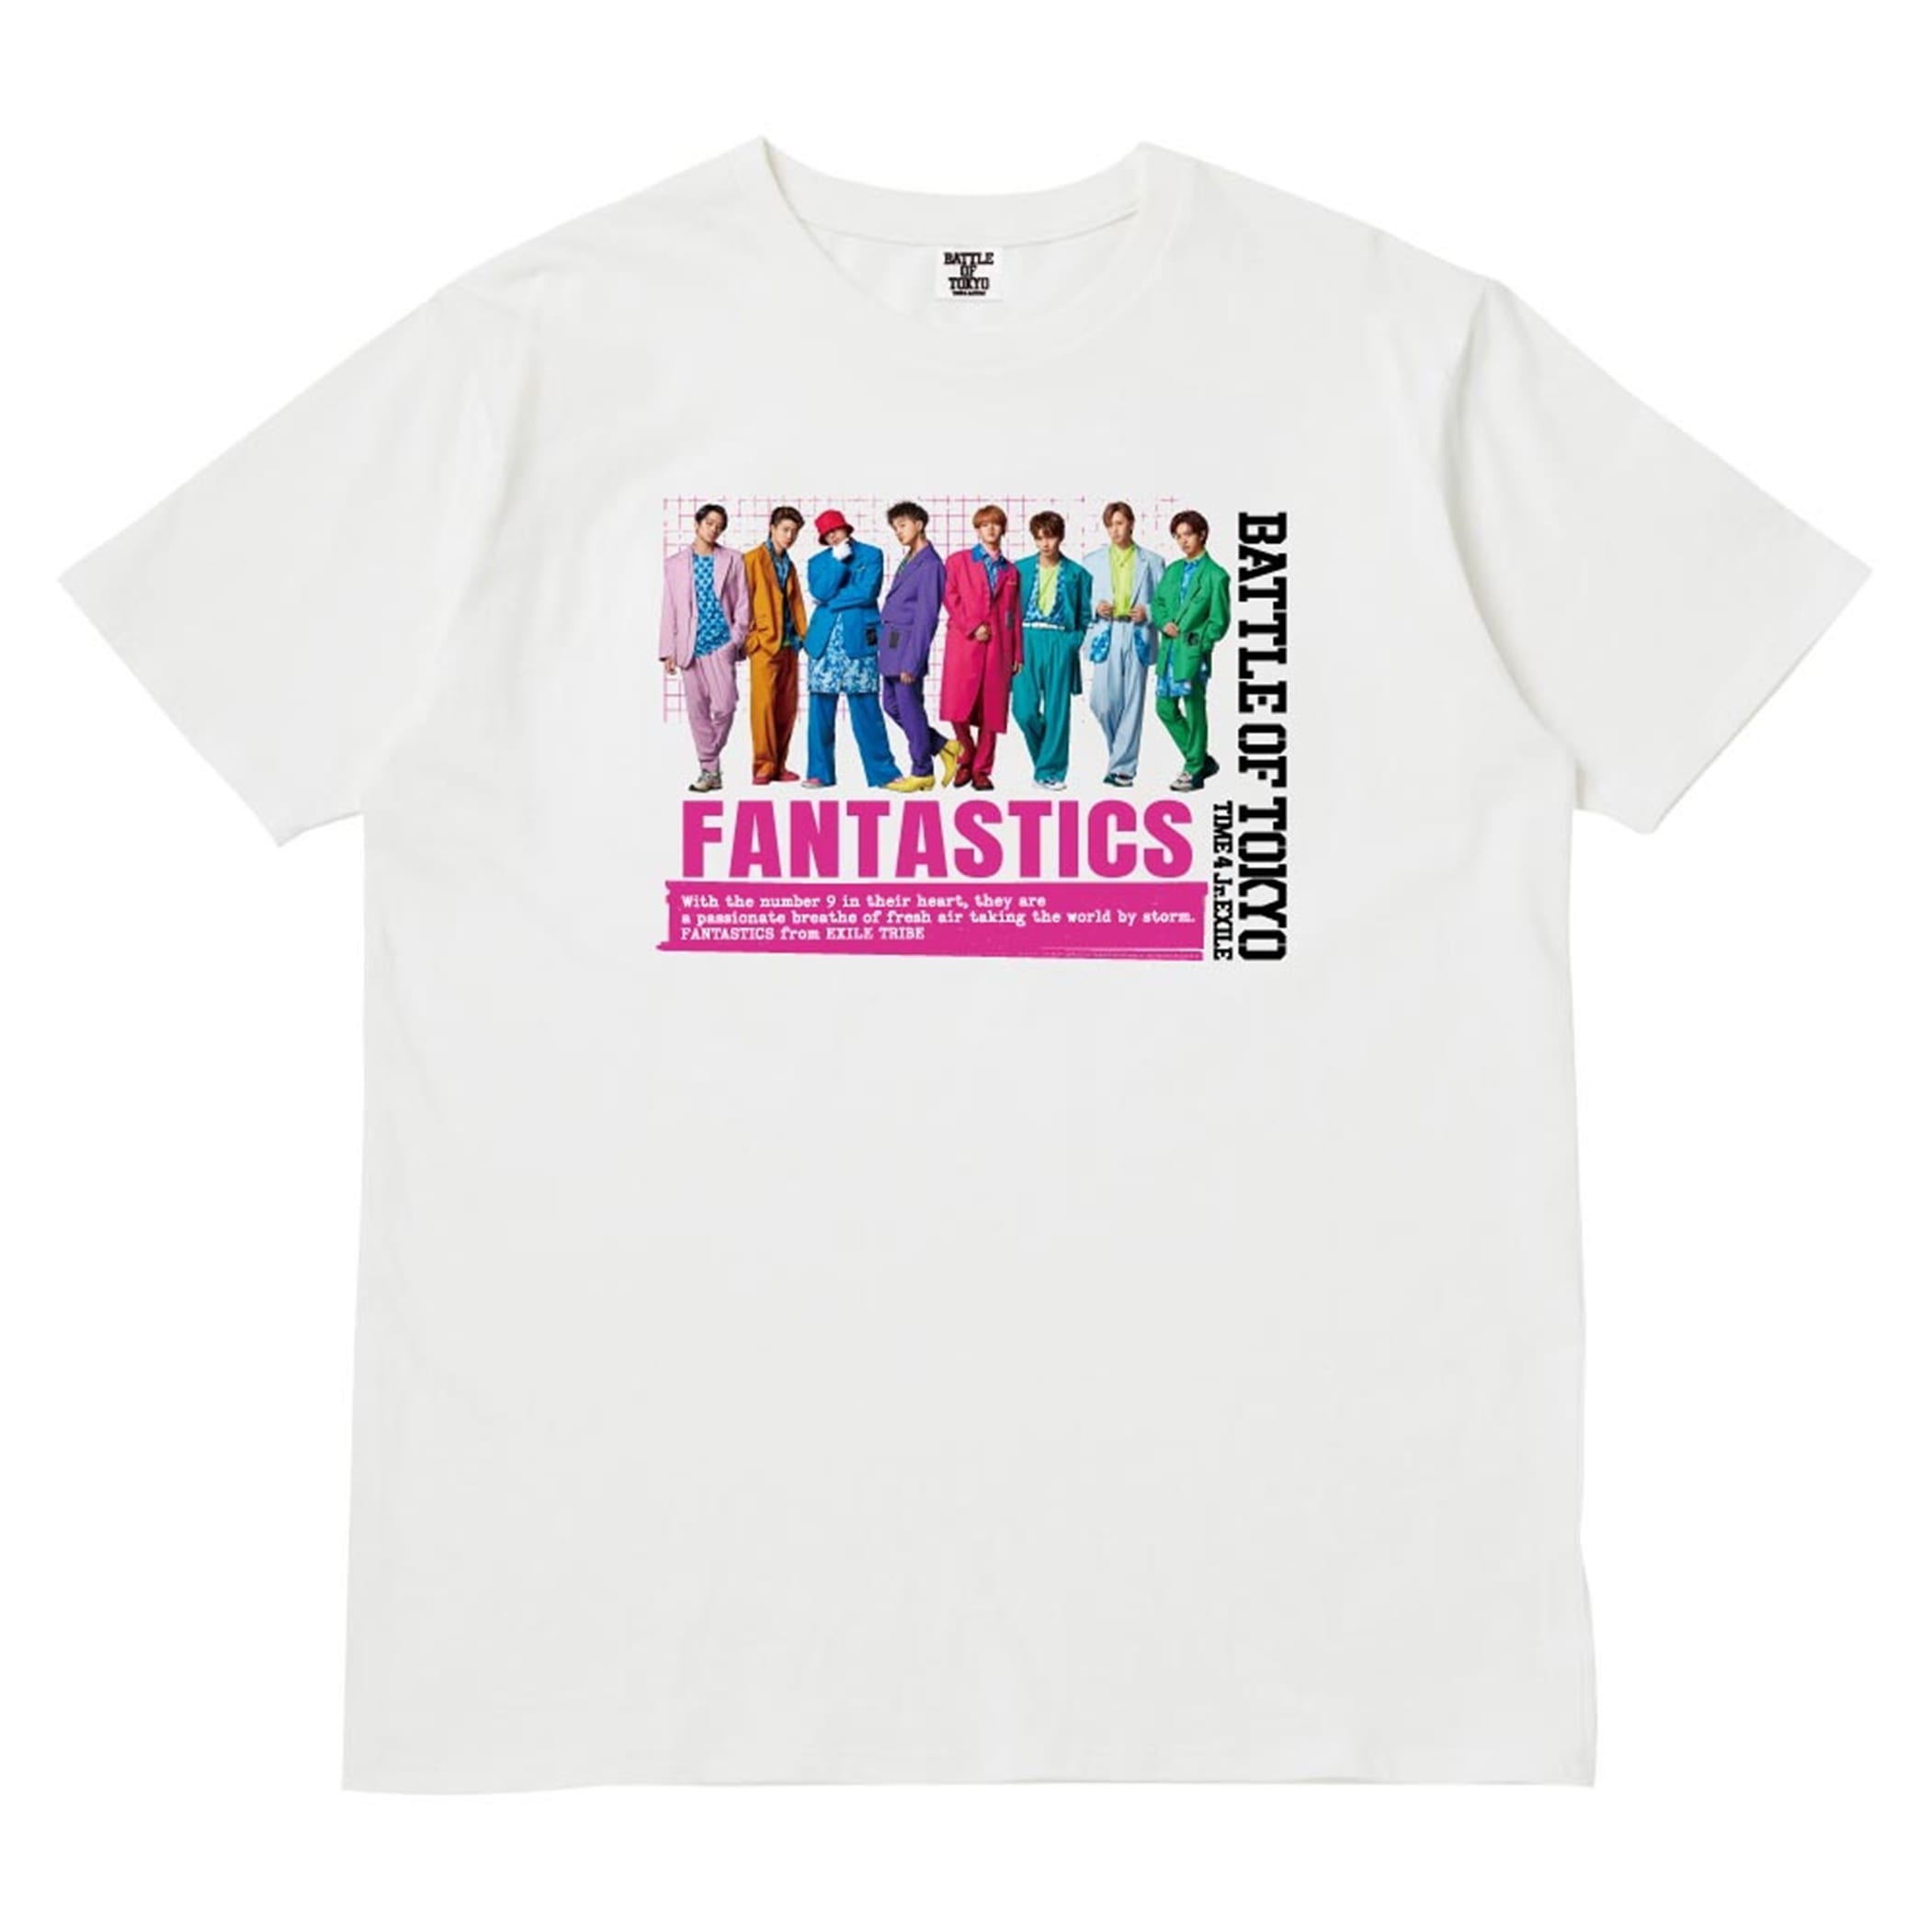 カーキ×インディゴ 【BOT】FANTASTICS Tシャツ BATTLE OF TOKYO - 通販